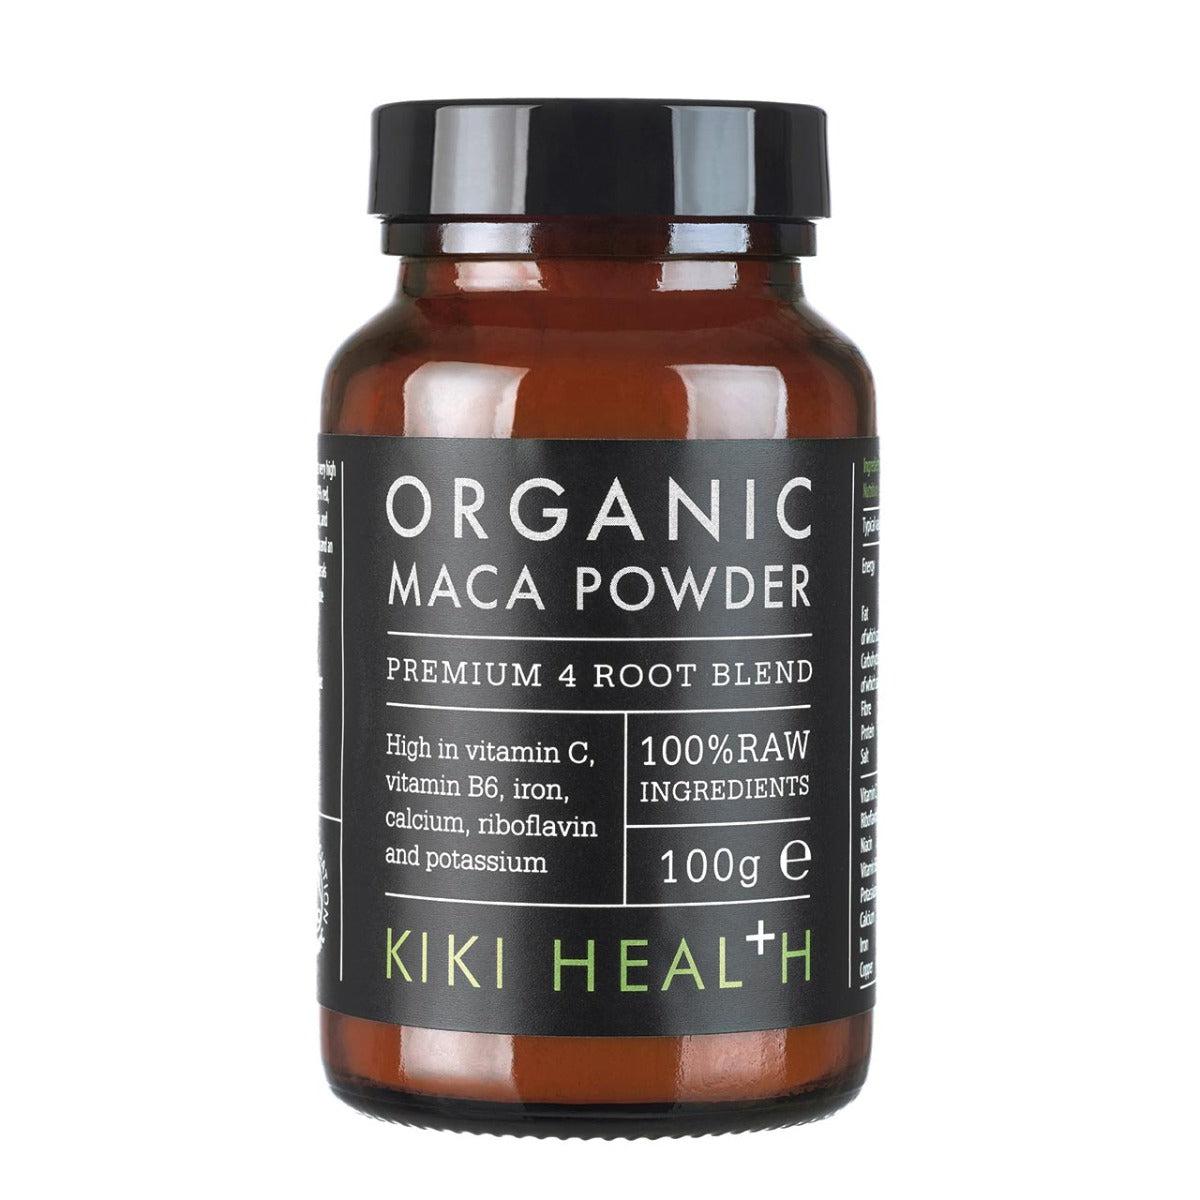 Kiki Health Organic Maca Powder Premium 4 Root Blend Black Maca Red Maca Yellow Maca Purple Maca100g